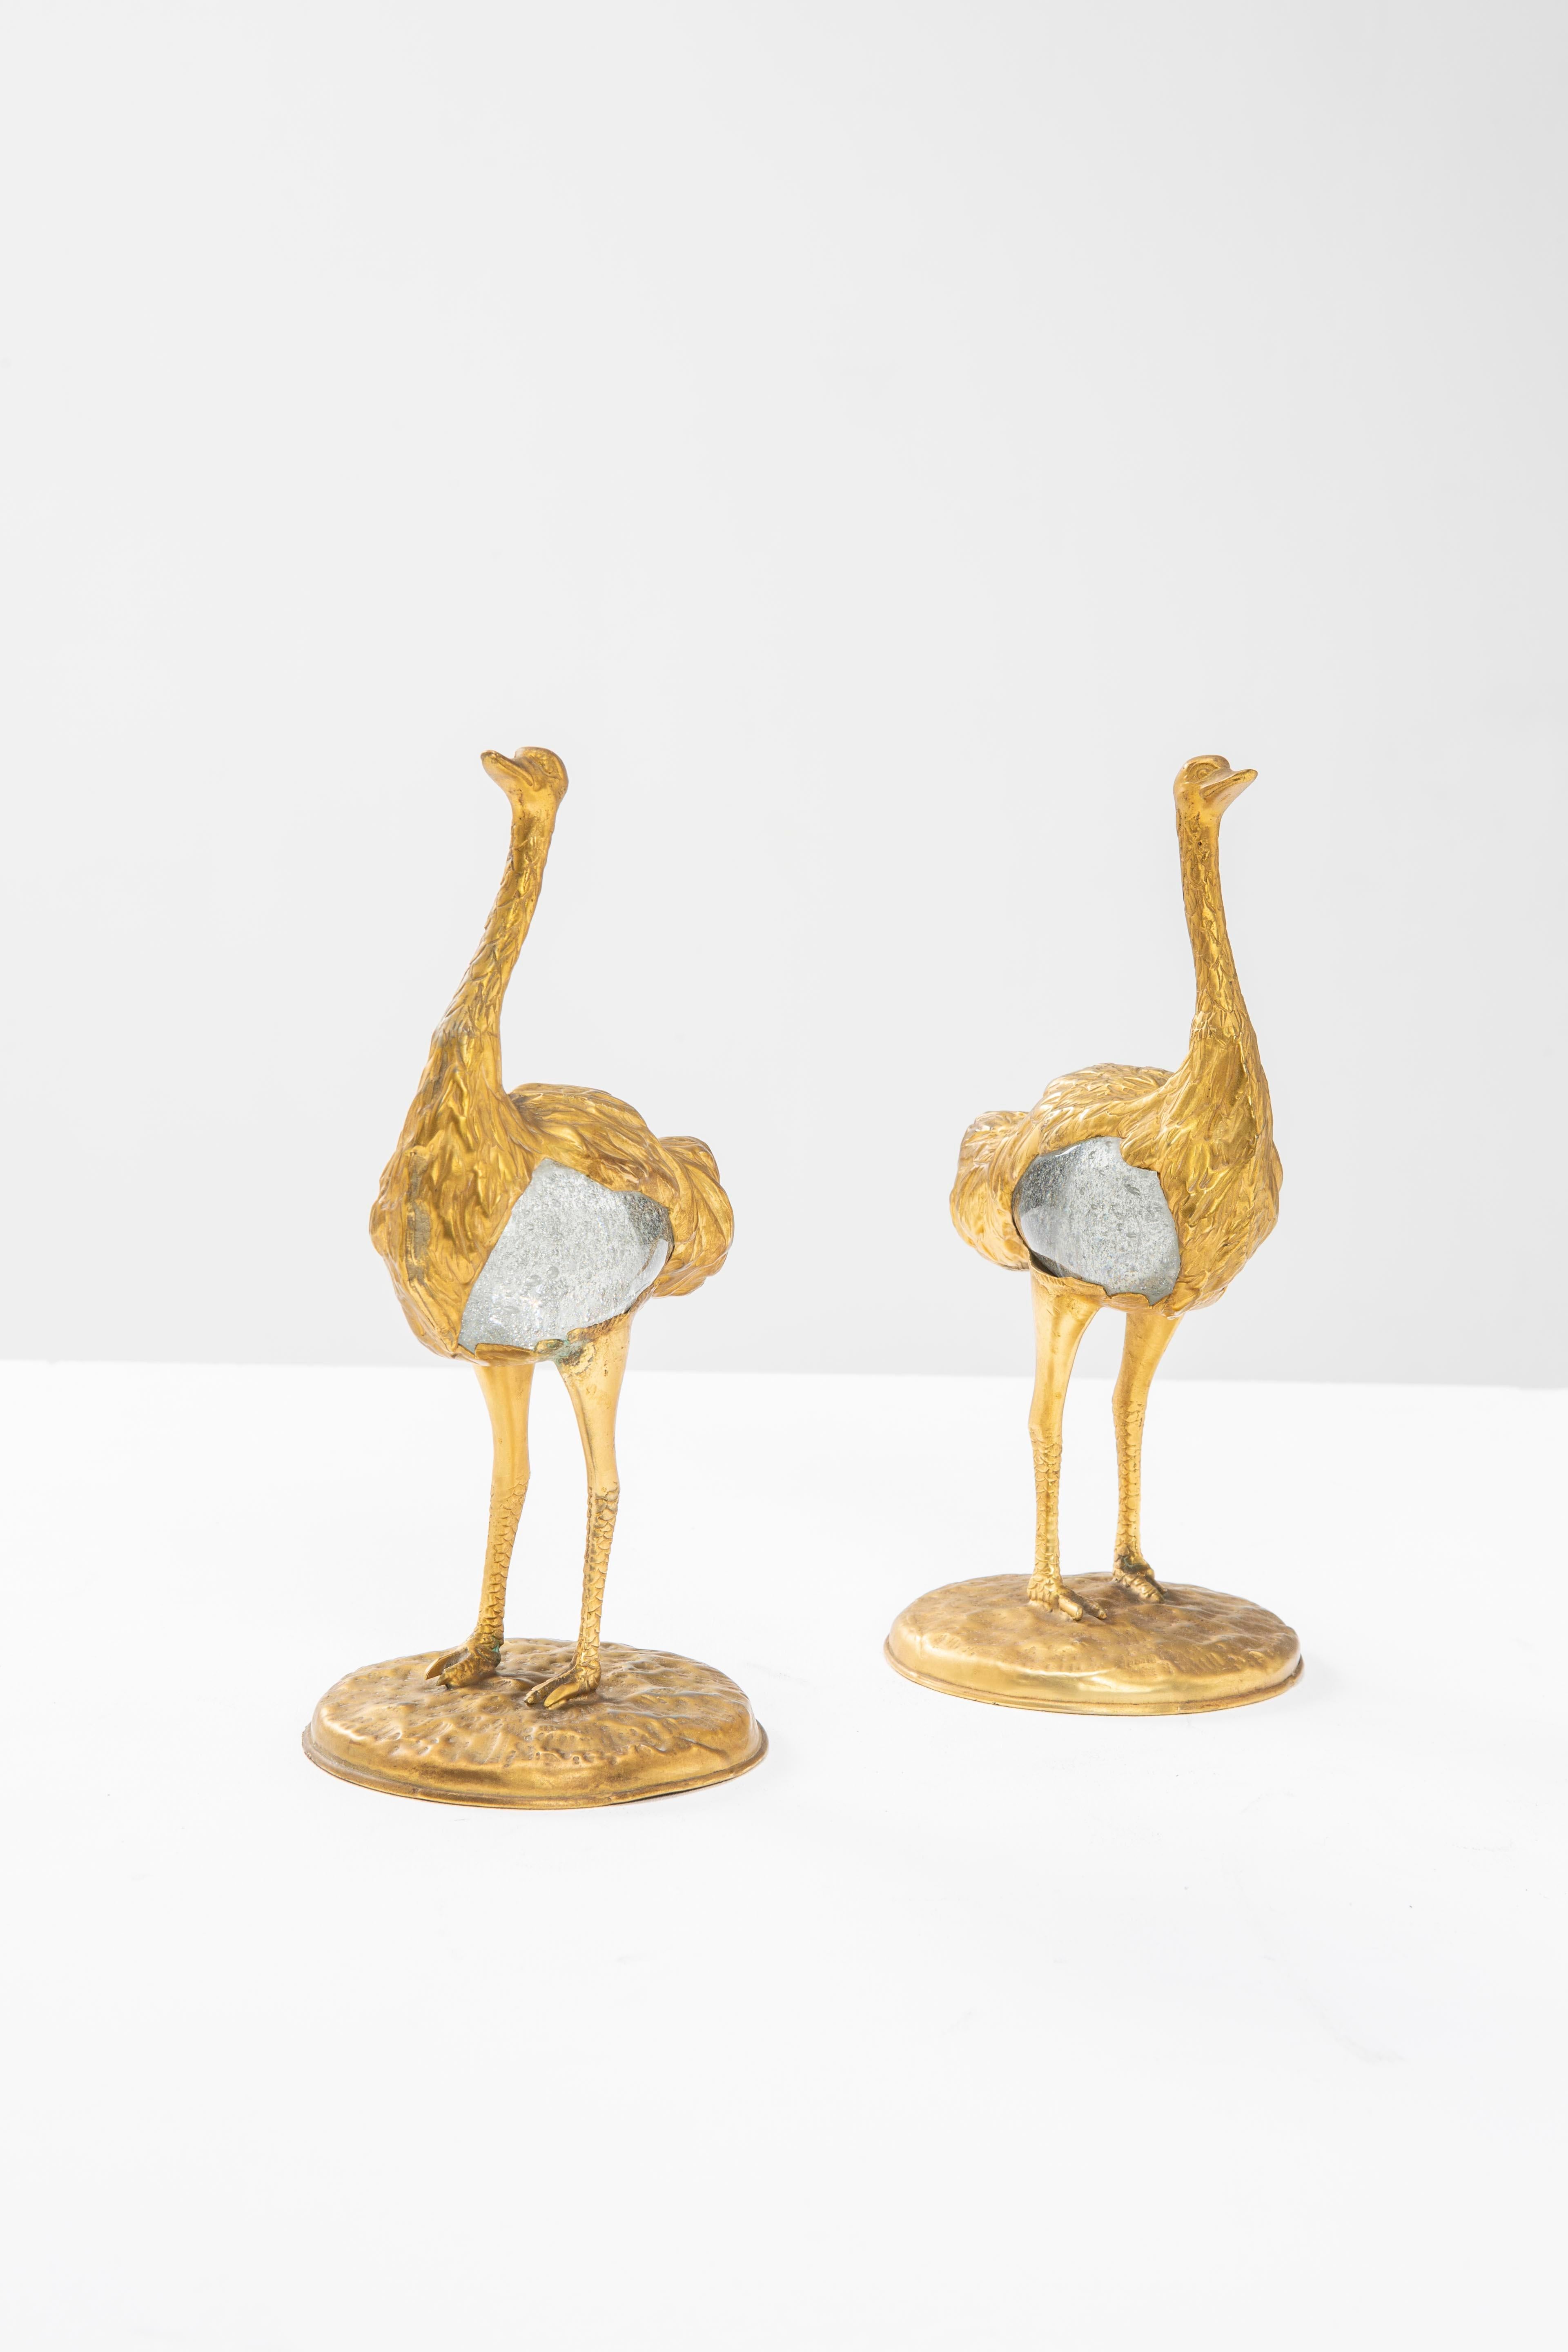 Italian Gabriella Crespi Two lost-wax bronze ostriches with Murano glass body - 1970s For Sale